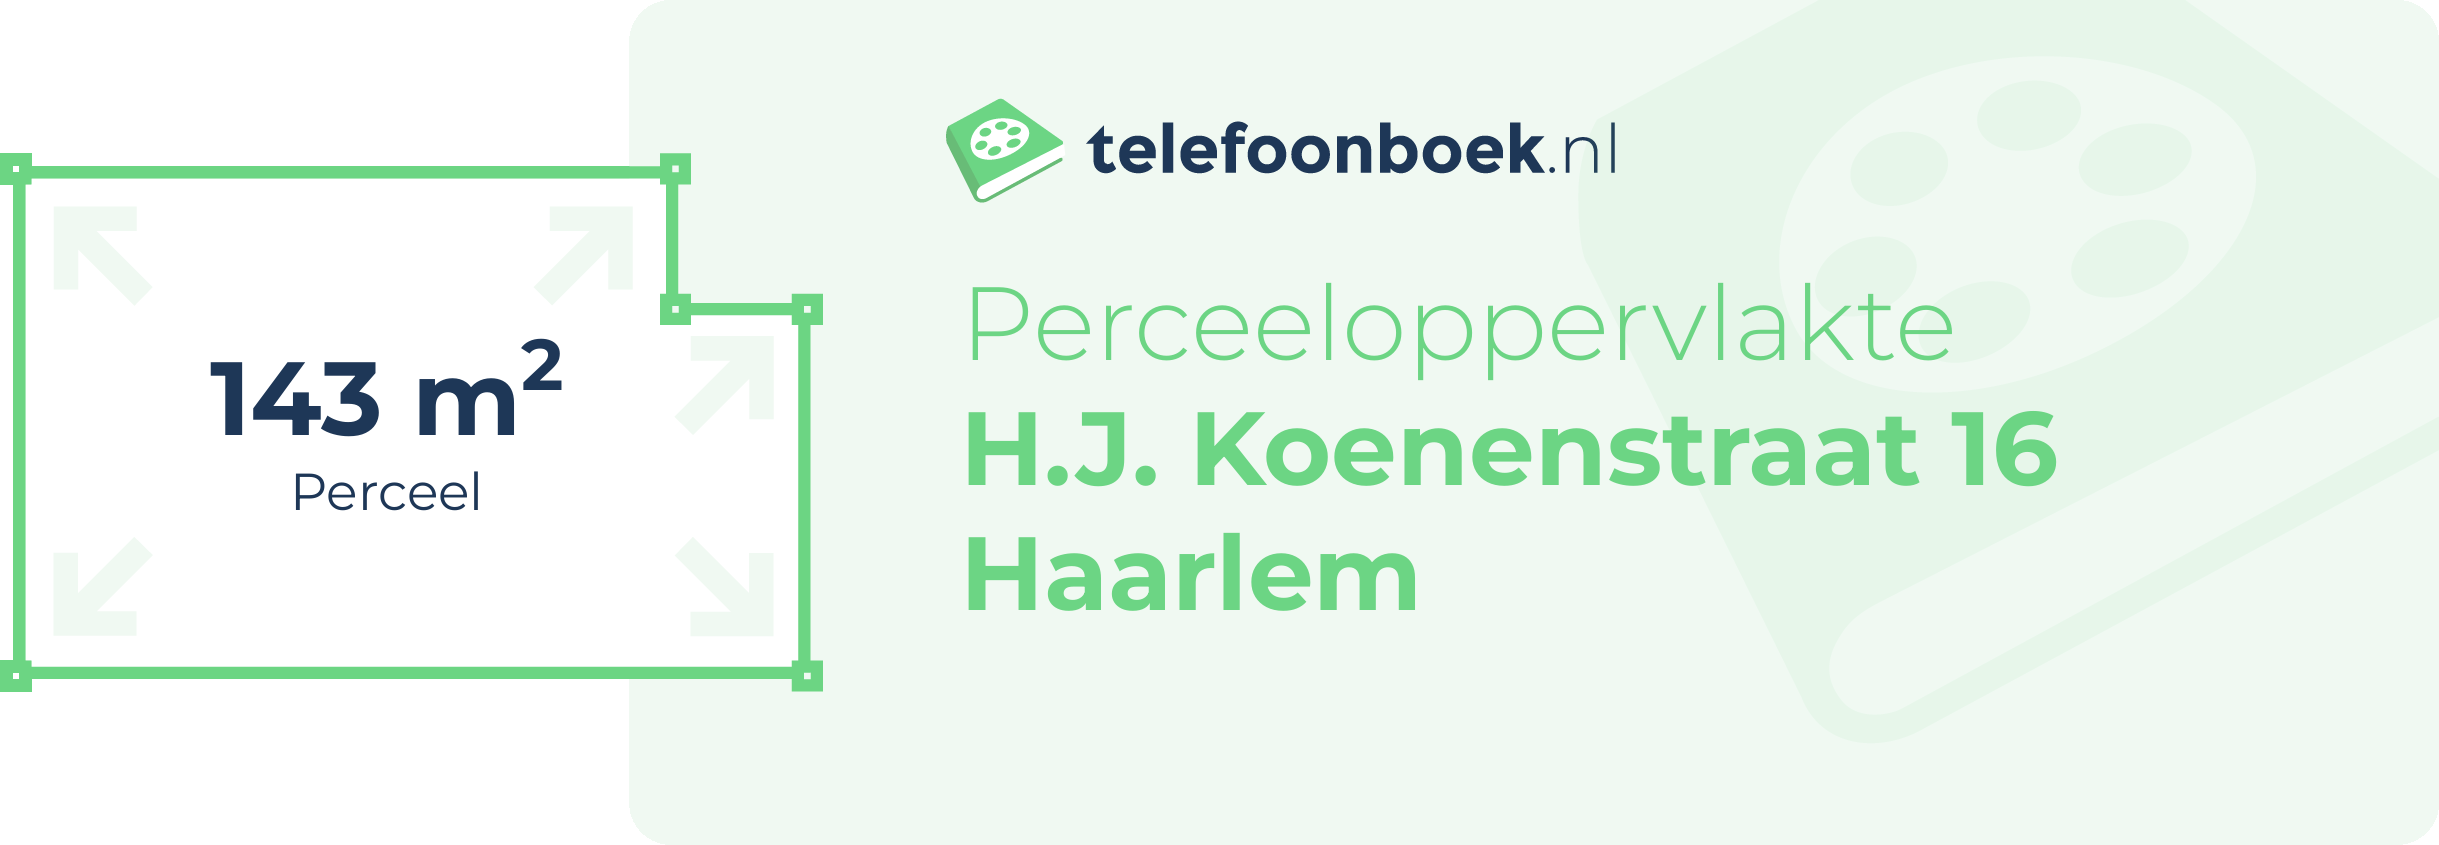 Perceeloppervlakte H.J. Koenenstraat 16 Haarlem